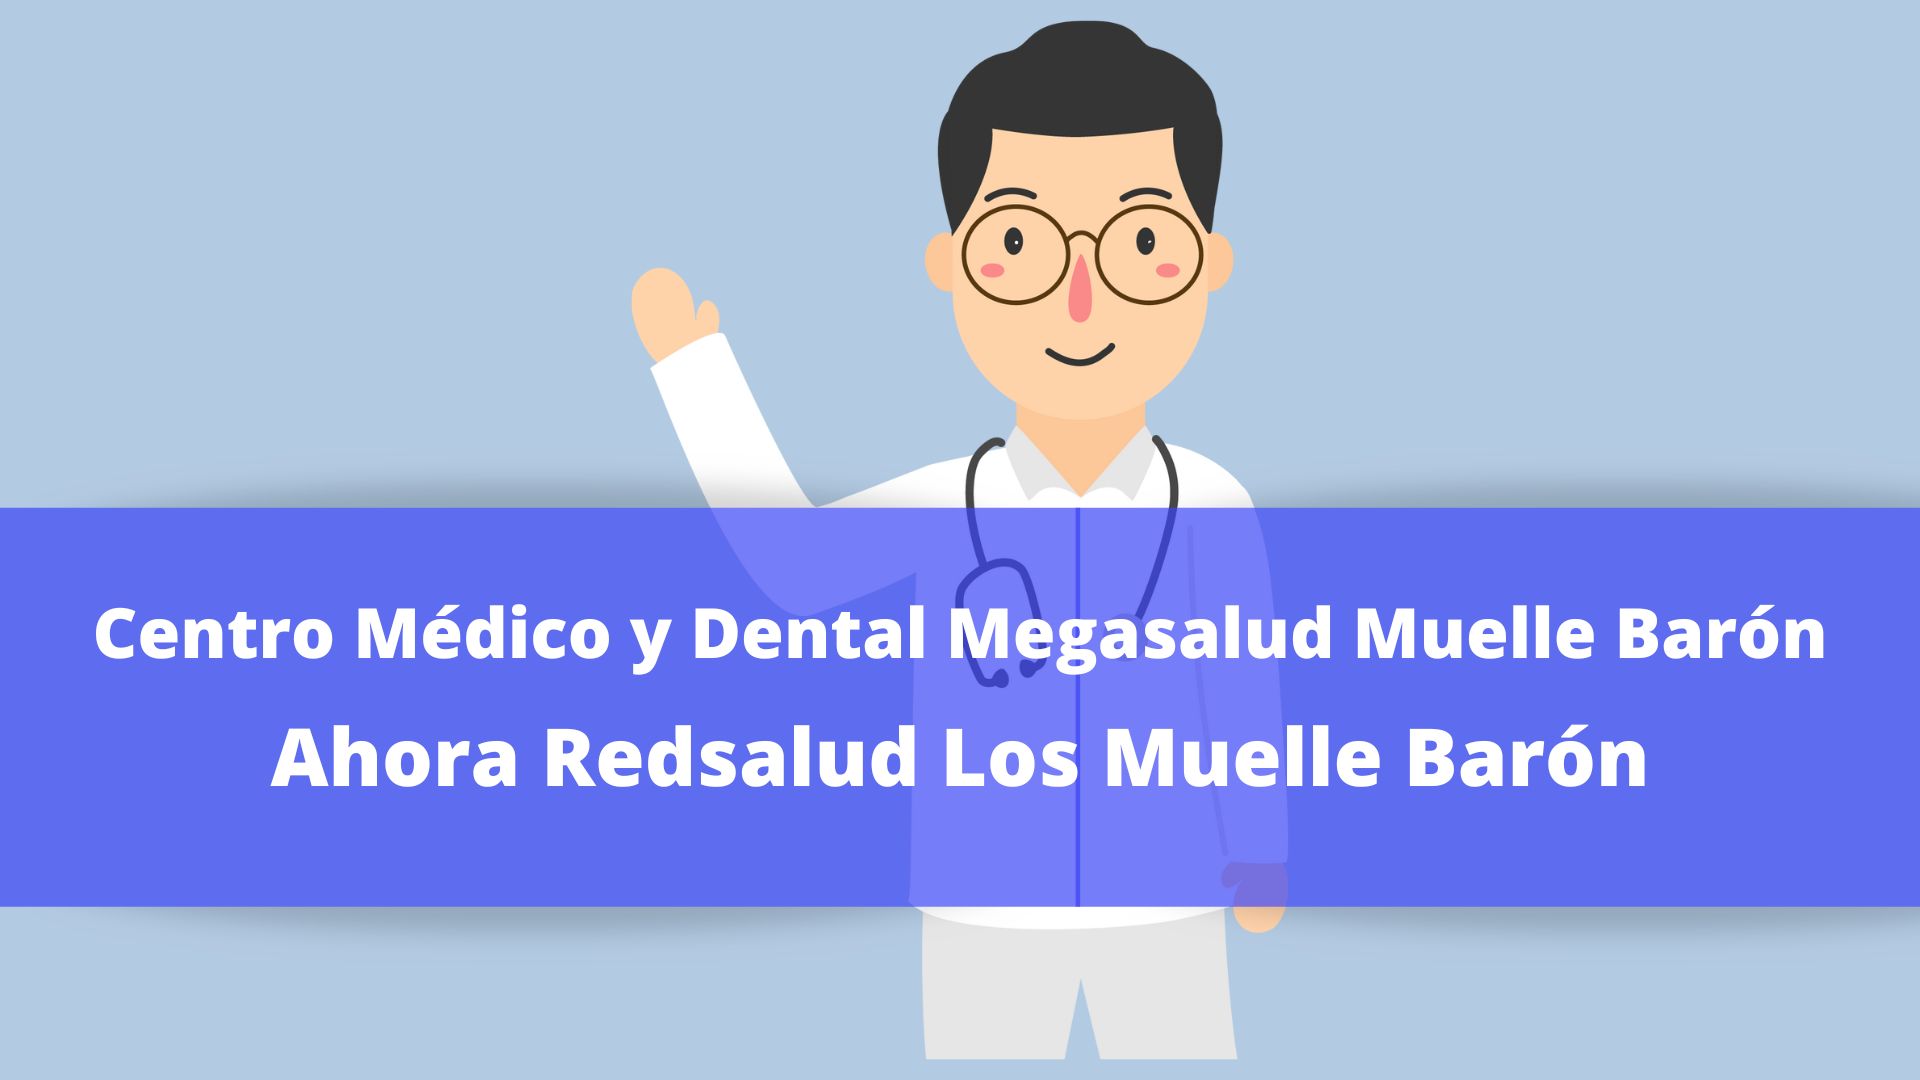 Centro Médico y Dental RedSalud Muelle Barón